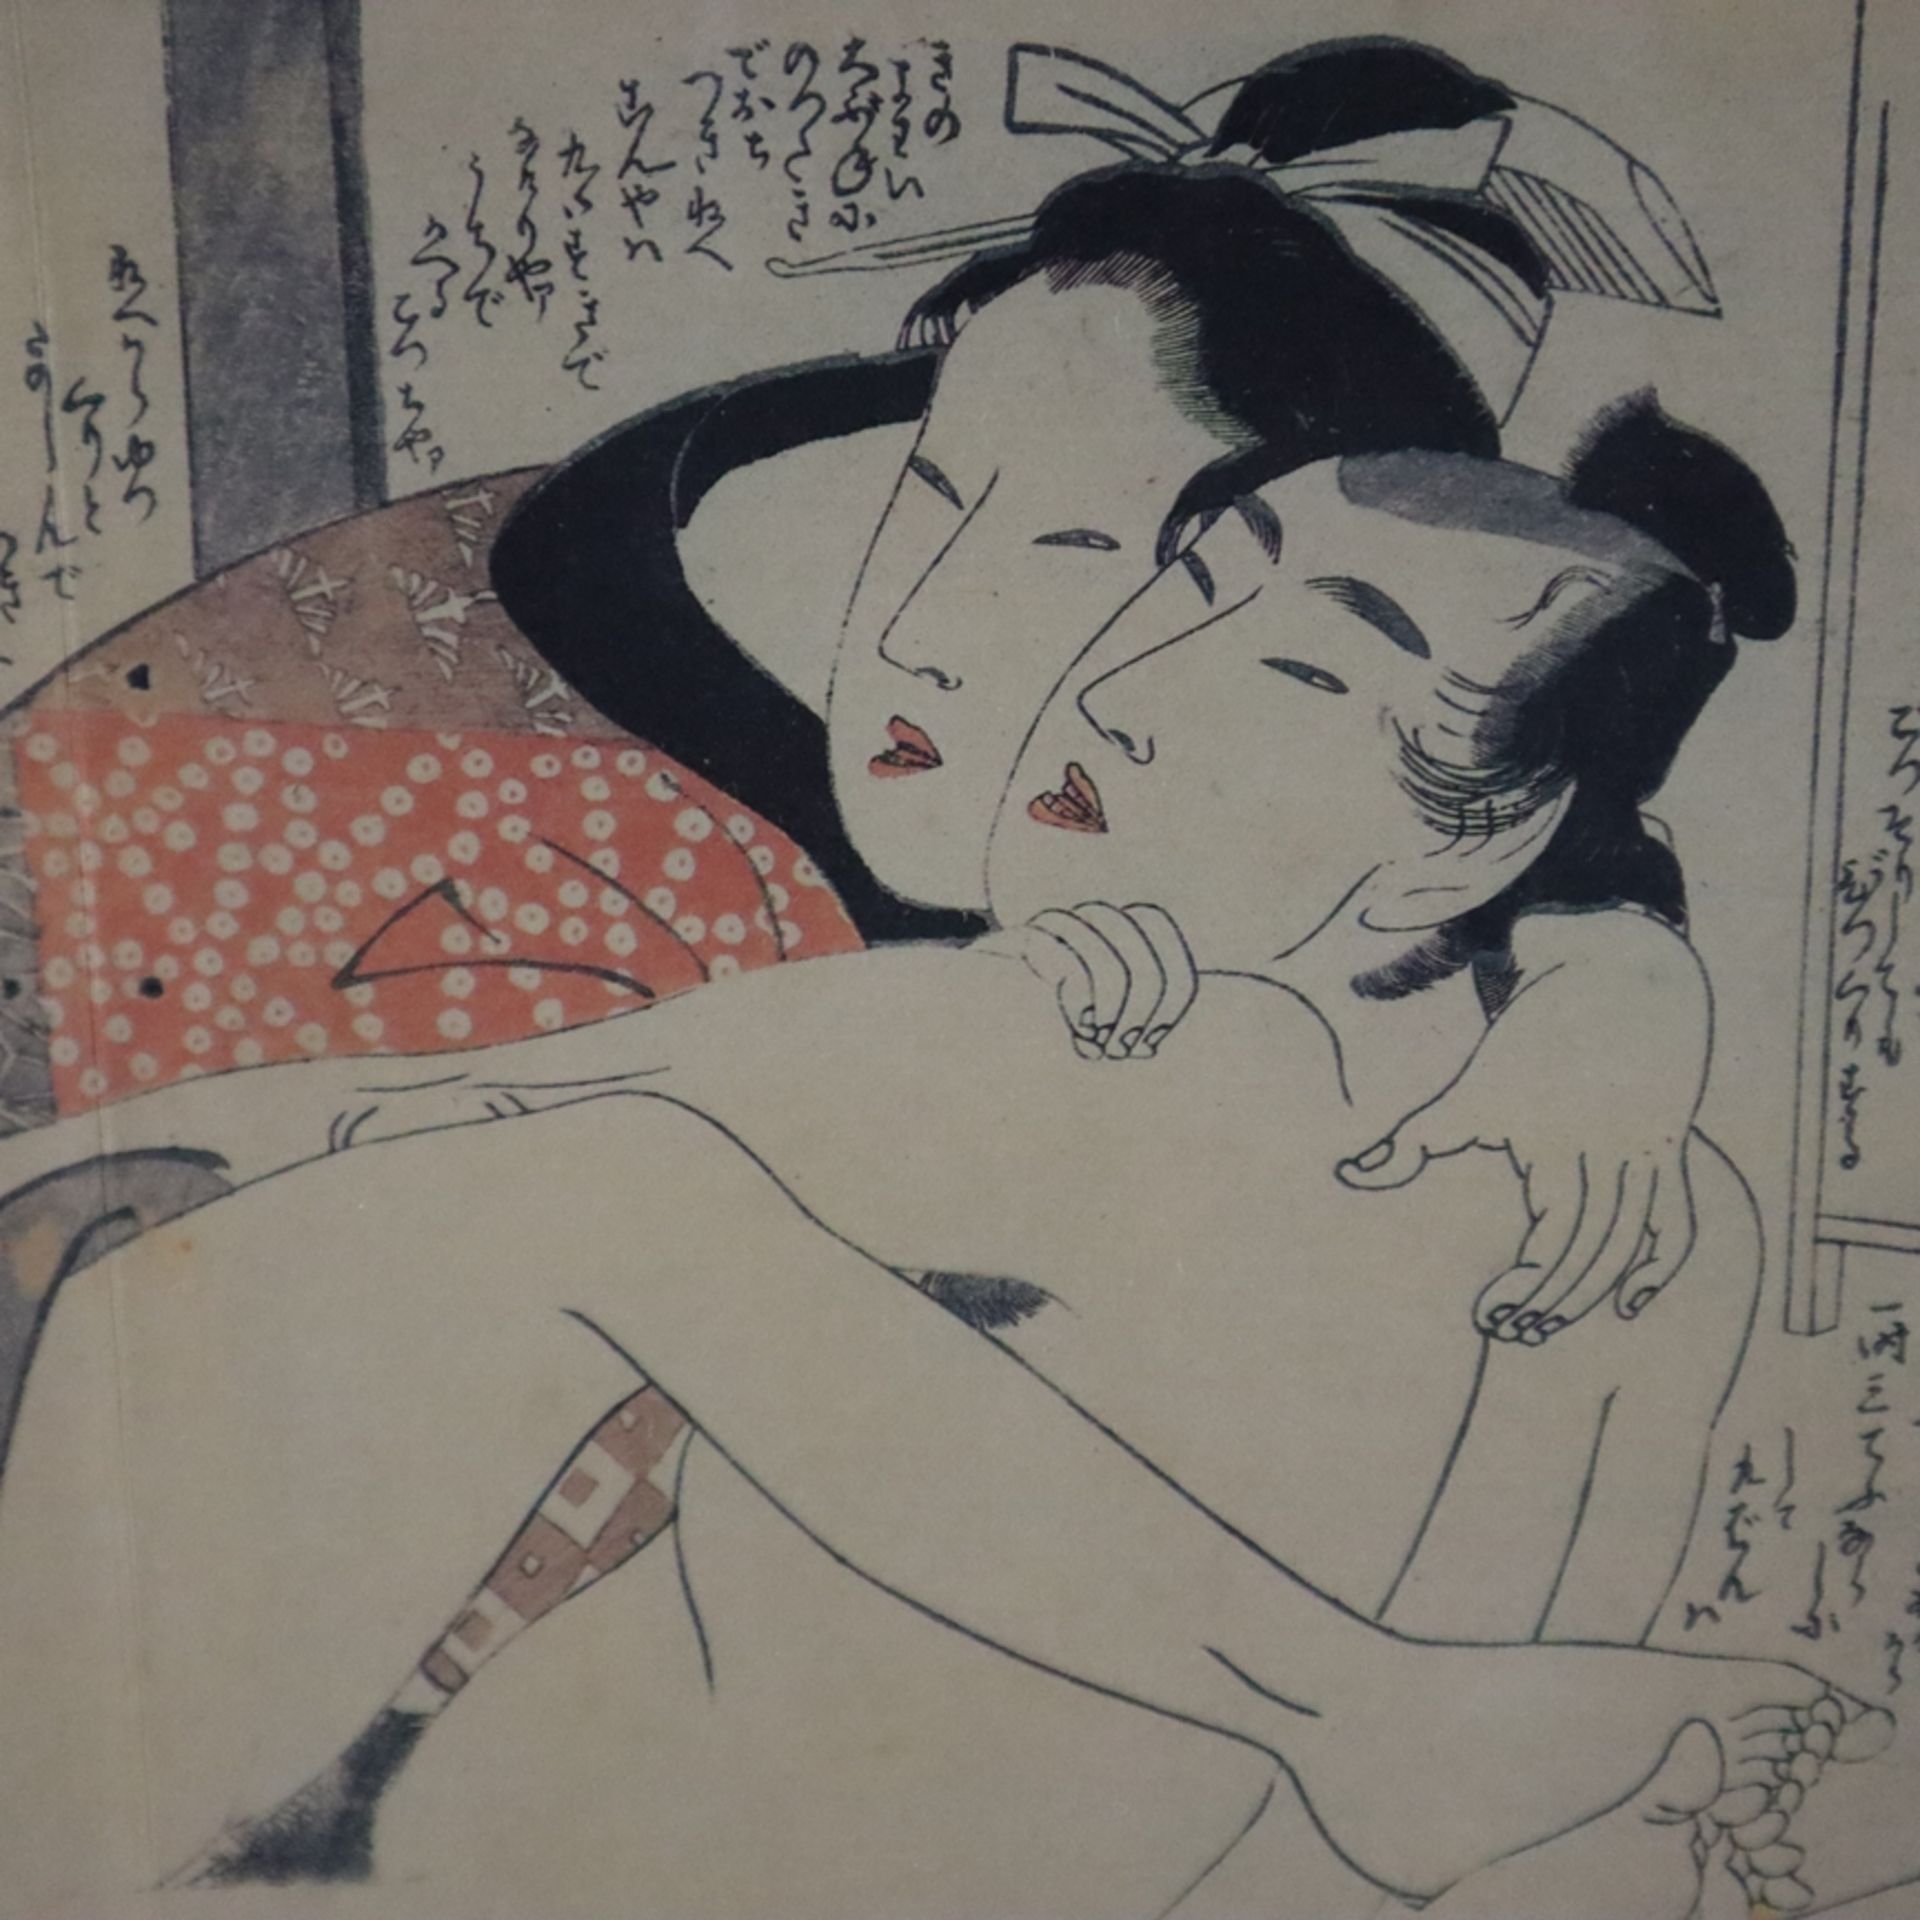 Kitagawa, Utamaro (1753-1806 / japanischer Meister des klassischen japanischen Farbholzschnitts, na - Bild 4 aus 5